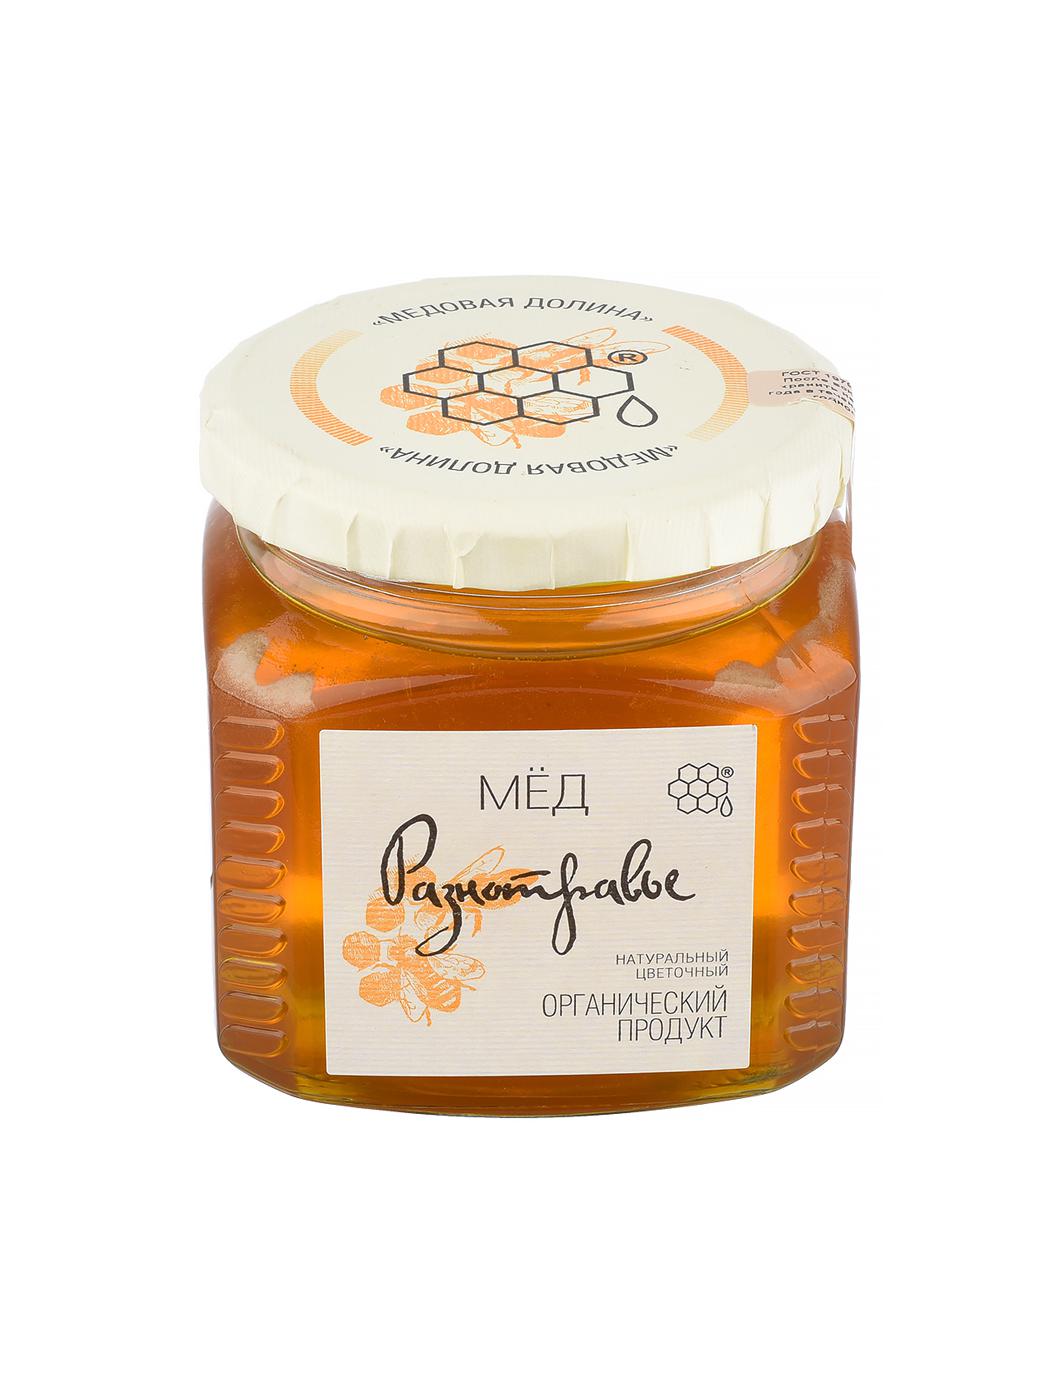 Мед натуральный цветочный Разнотравье продукт 0,5 кг (б/стекло).